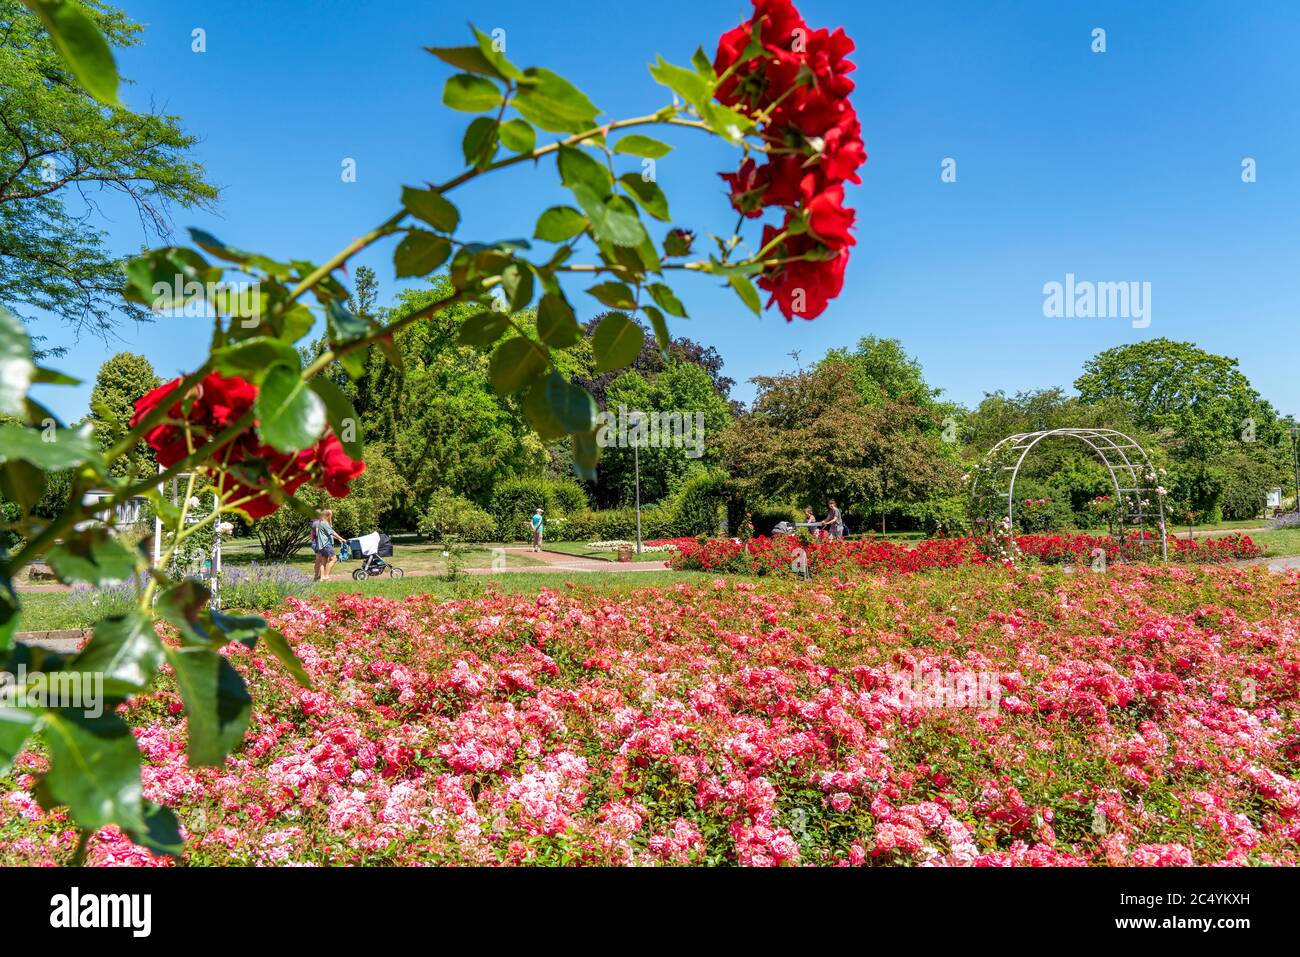 Le Grugapark, Essen, jardin botanique, parc de loisirs et de loisirs locaux, Rose Garden, NRW, Allemagne Banque D'Images